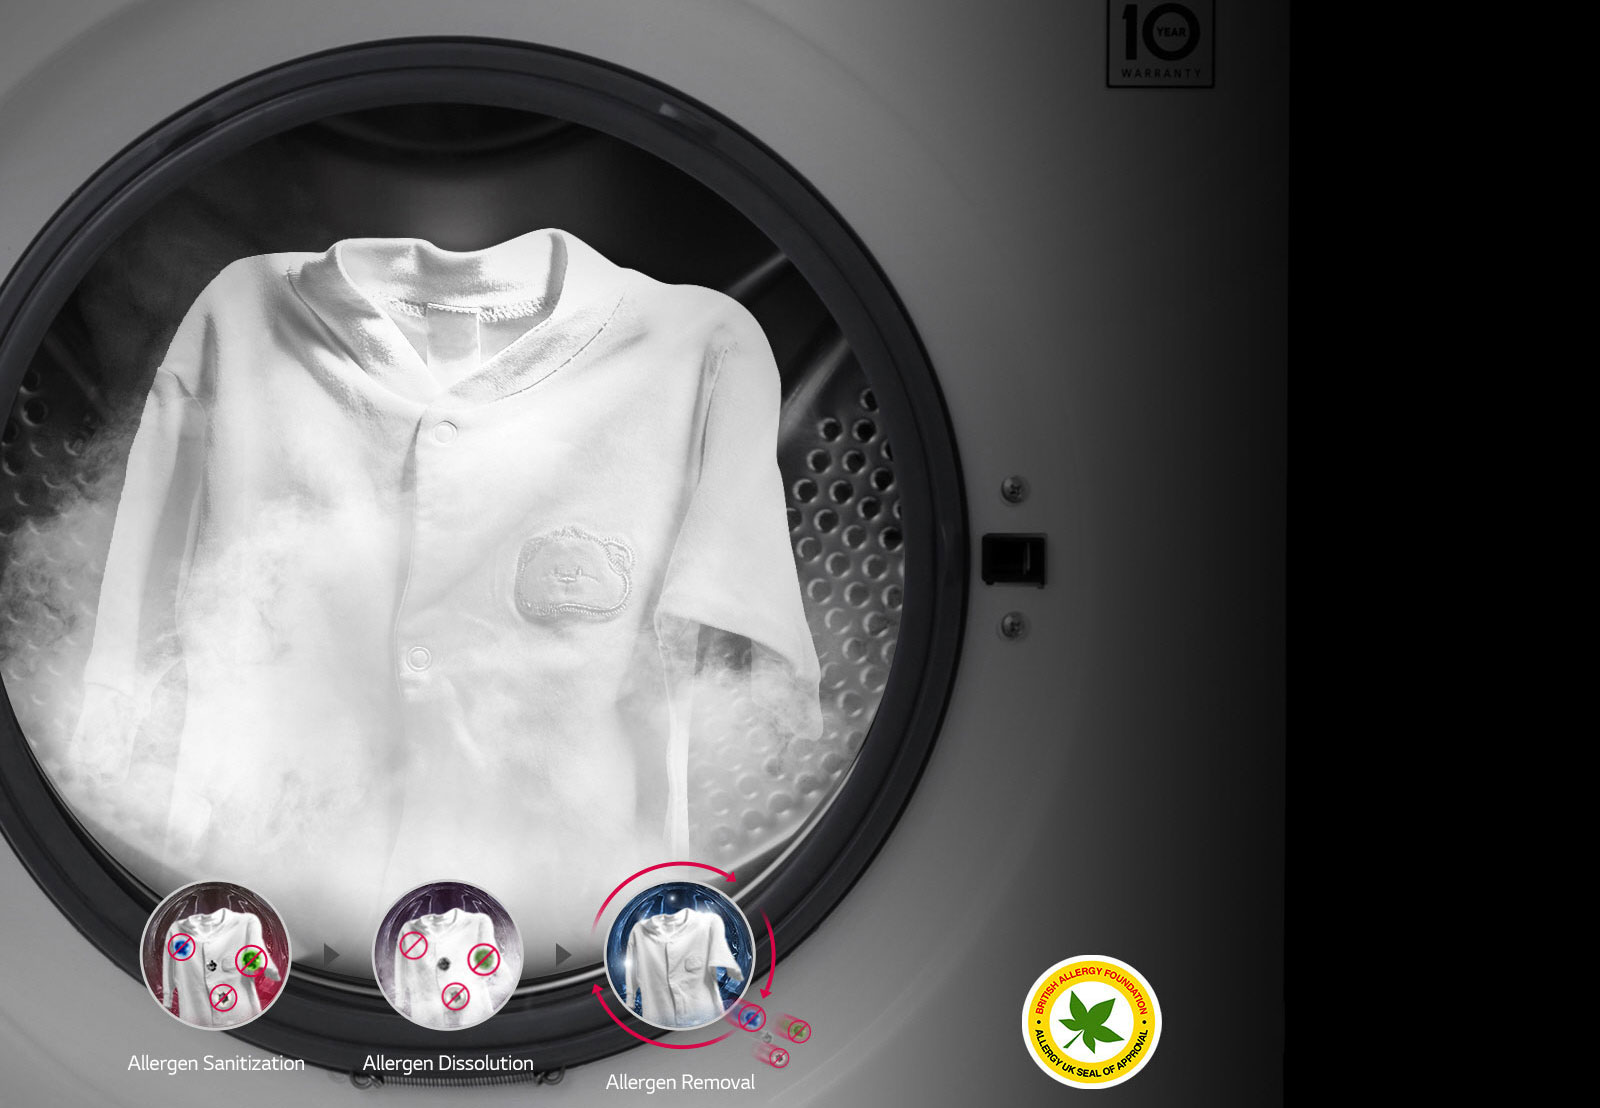 99.9% ALLERGENES REDUCED with Steam1 | LG 7kg Washing Machine